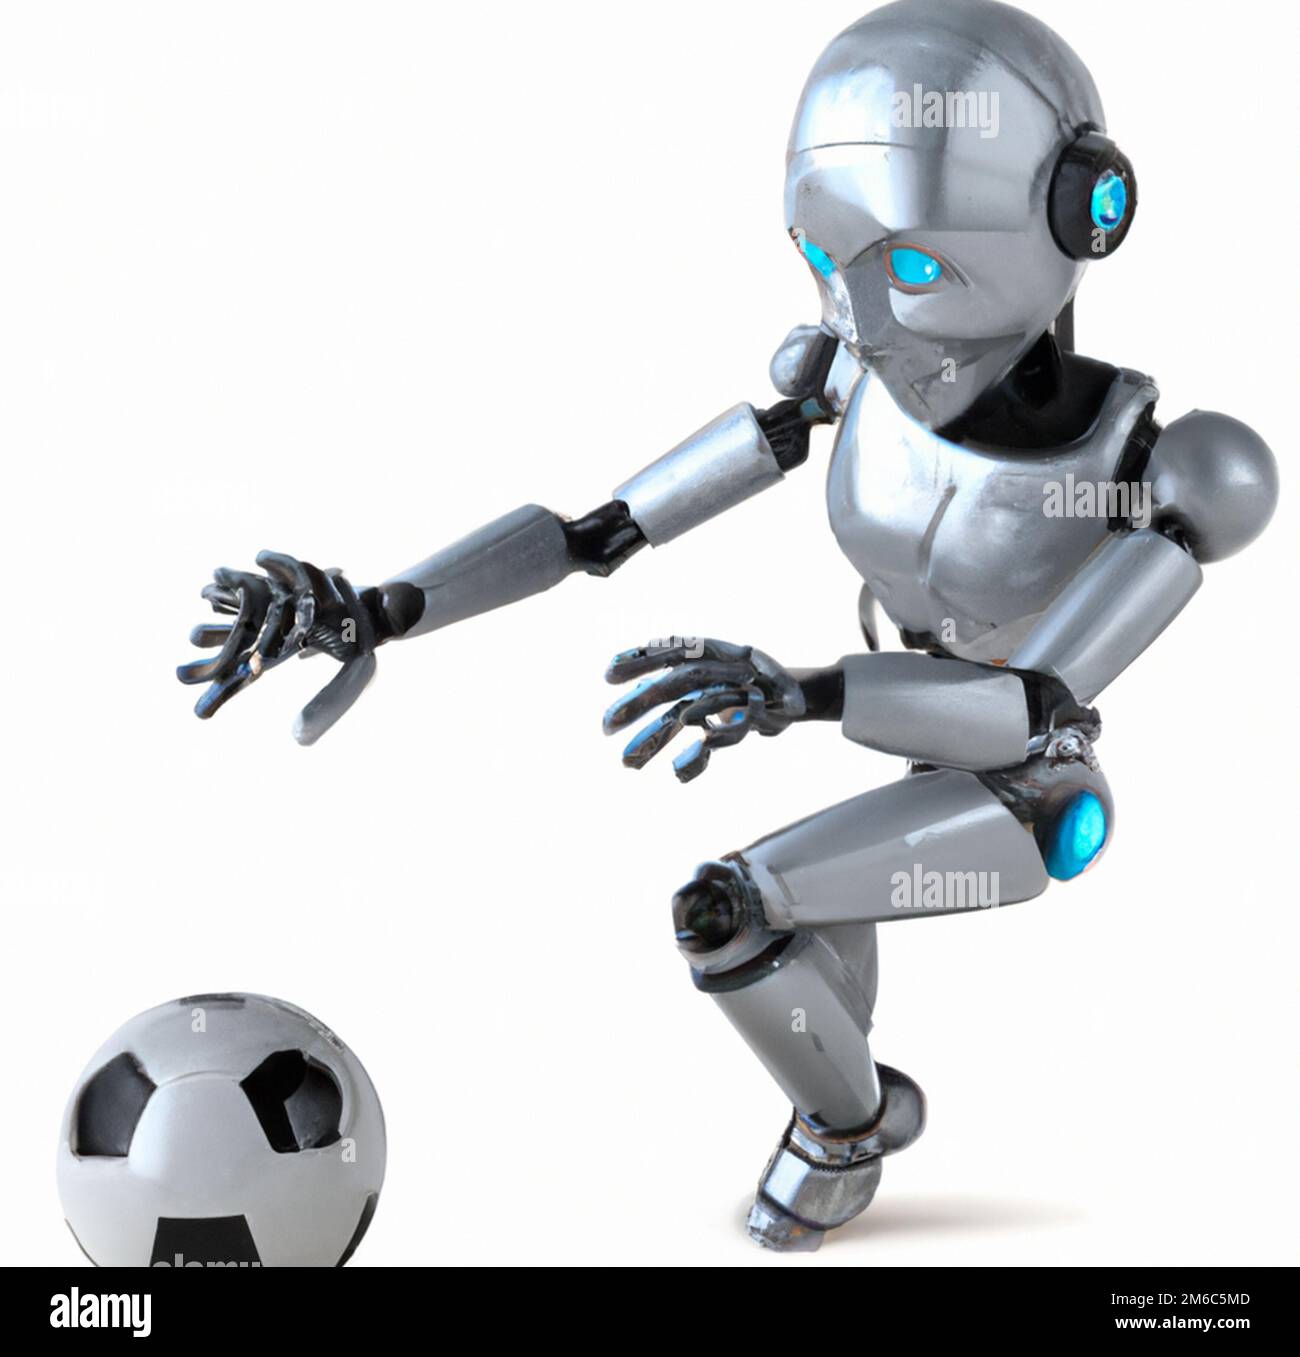 Ballon de foot - Cyber Toys World